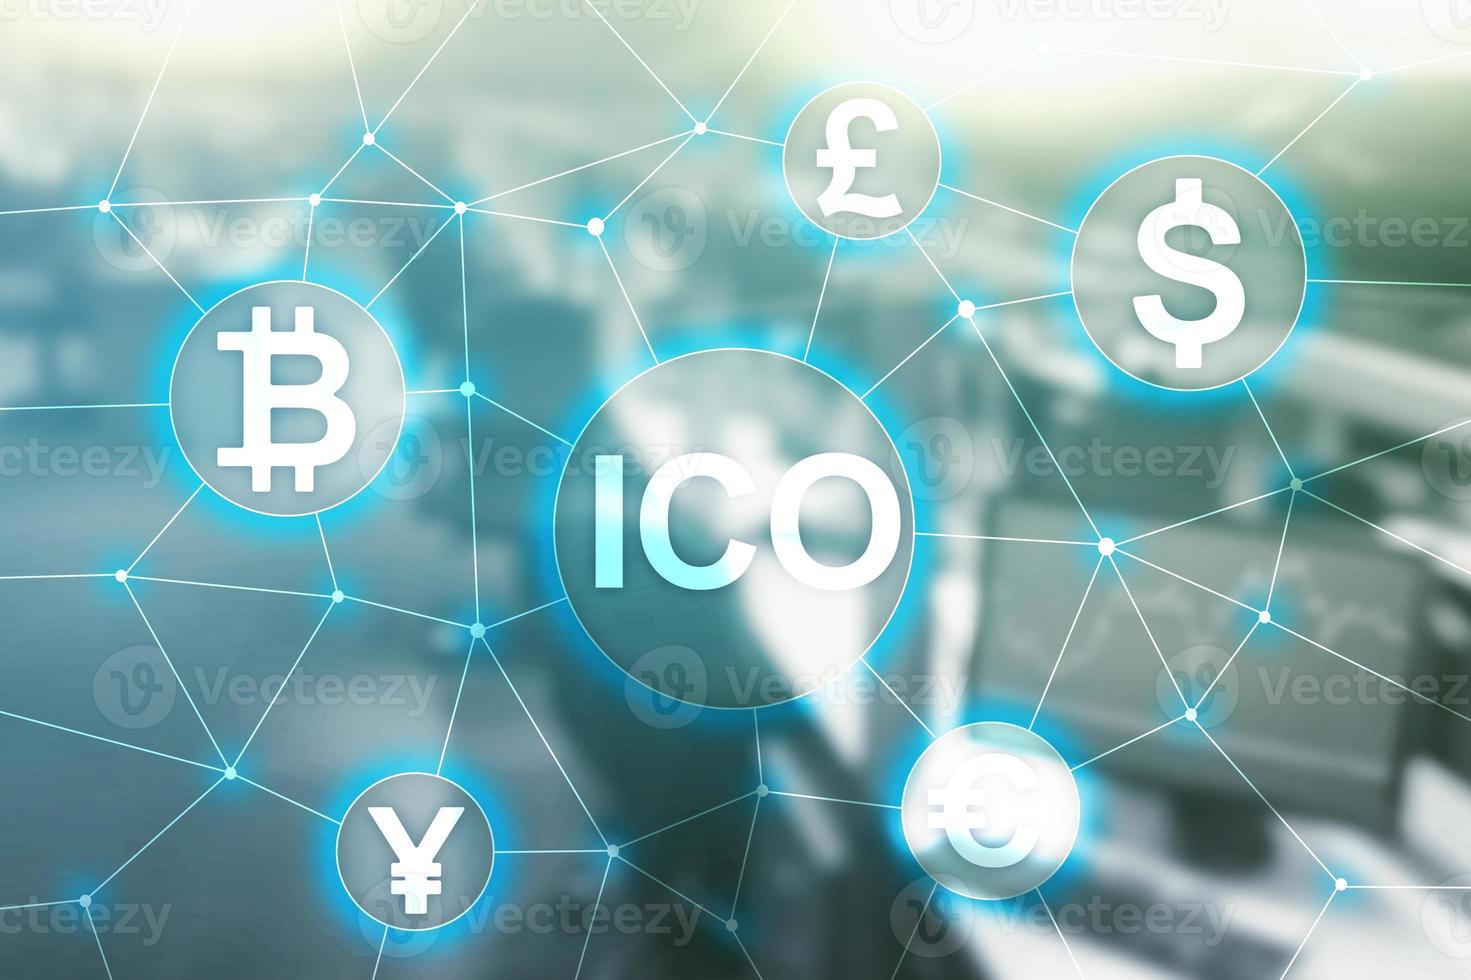 ico - initiële muntenaanbieding, blockchain- en cryptocurrency-concept op een wazige zakelijke bouwachtergrond foto